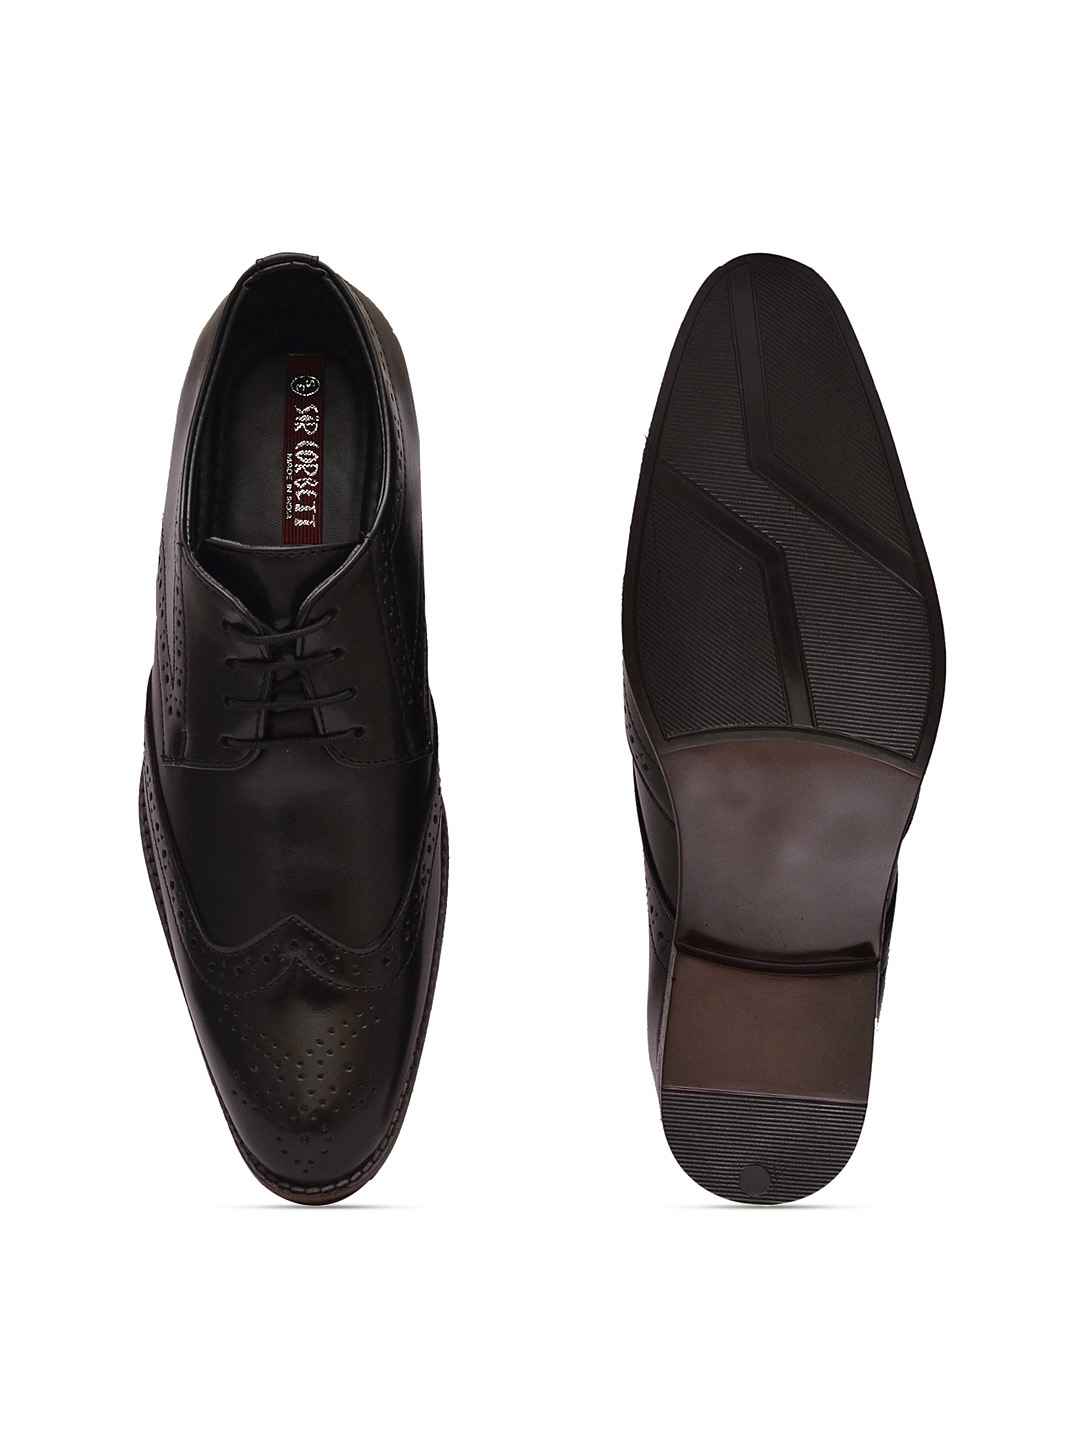 Sir-Corbett-Men-Black-Formal-Shoes